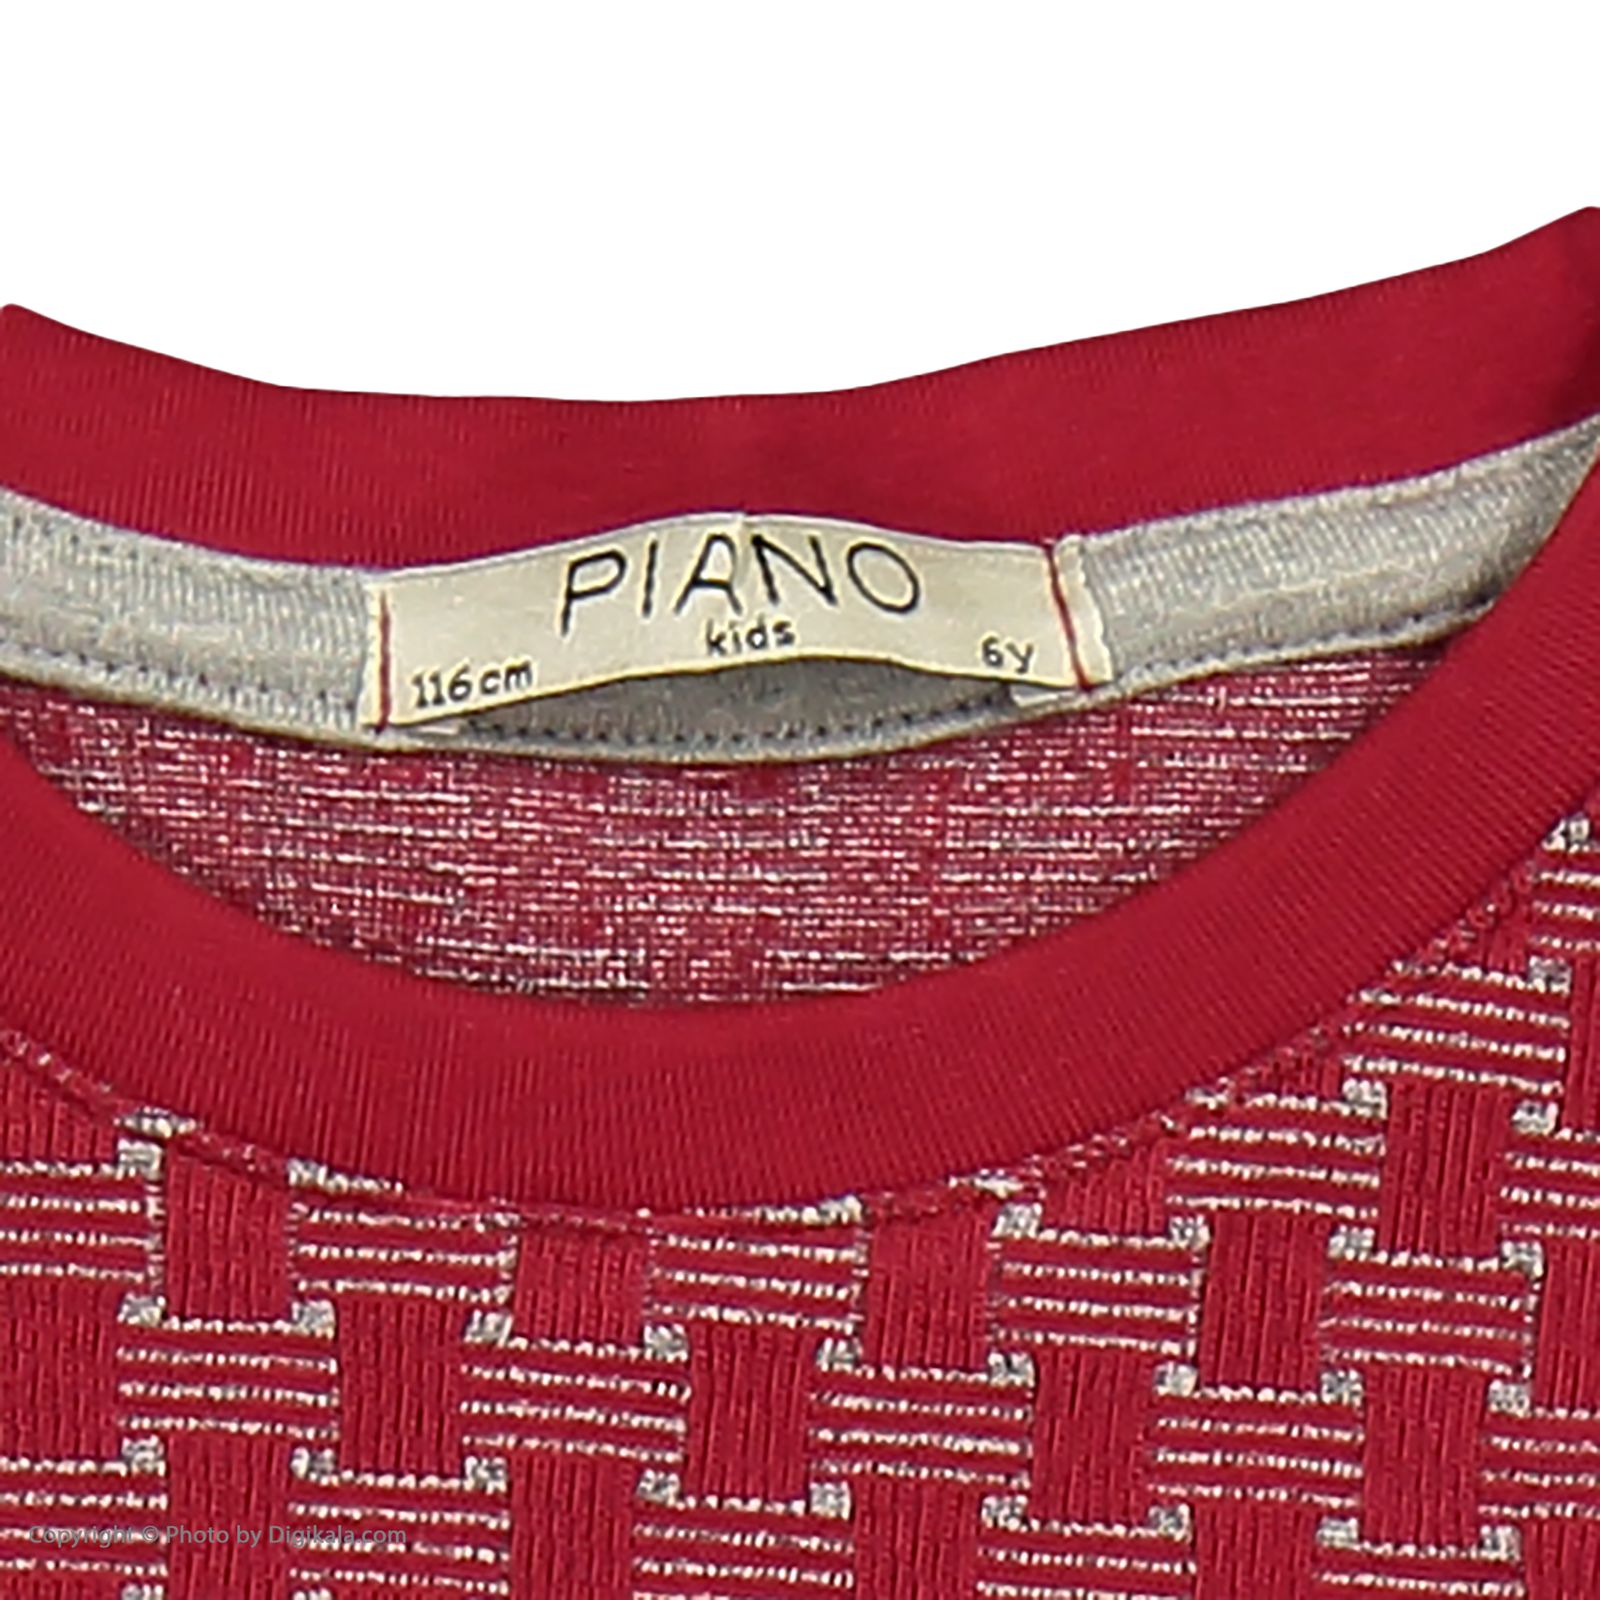 تی شرت دخترانه پیانو مدل 1009009901648-72 -  - 5